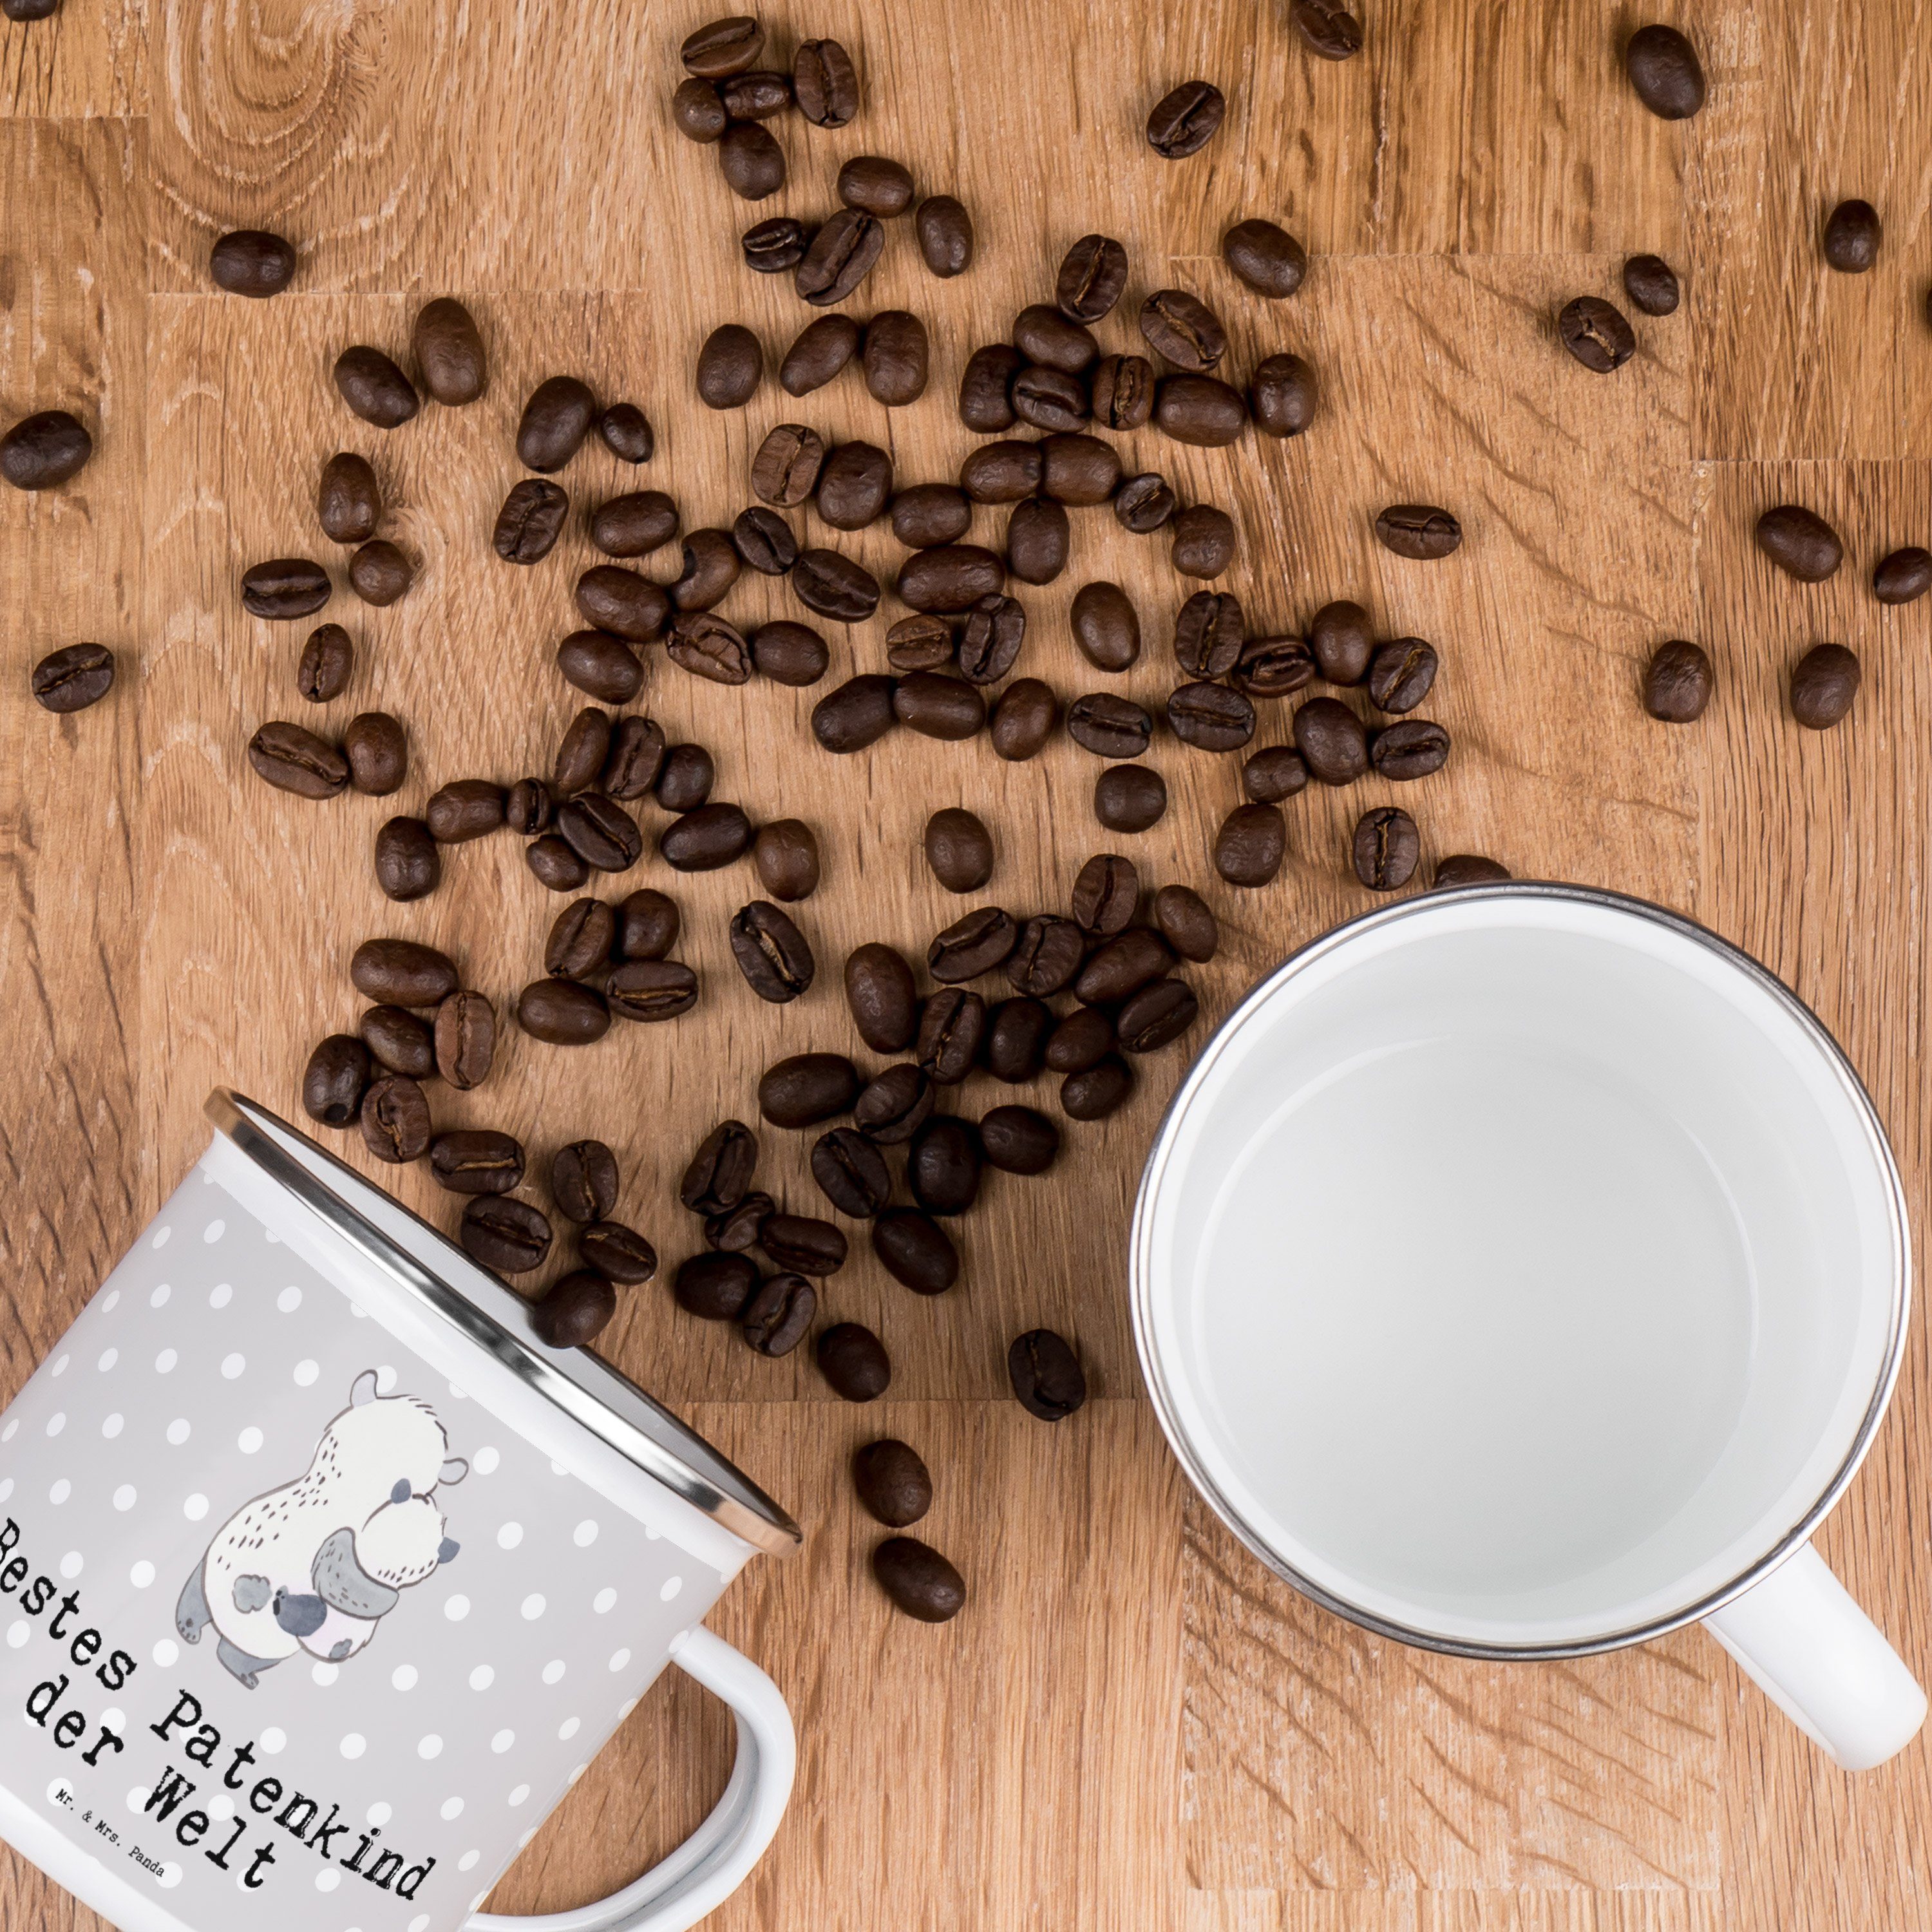 Mr. & Mrs. Panda Becher Kaffee - Welt Patenkind Pastell der Grau Bestes Ble, - Geschenk, Panda Emaille